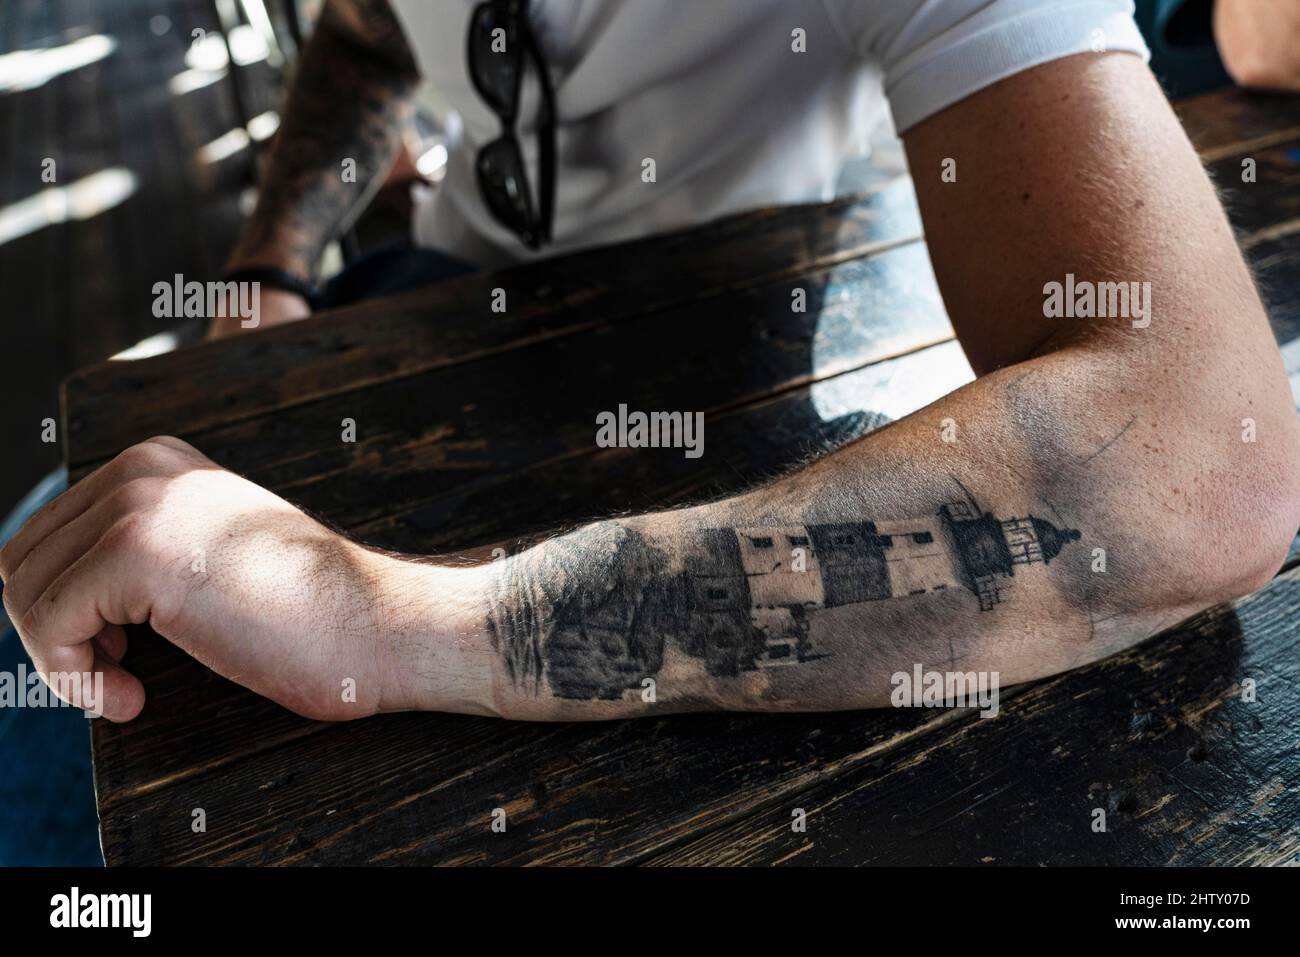 Tattoos on arm immagini e fotografie stock ad alta risoluzione - Alamy